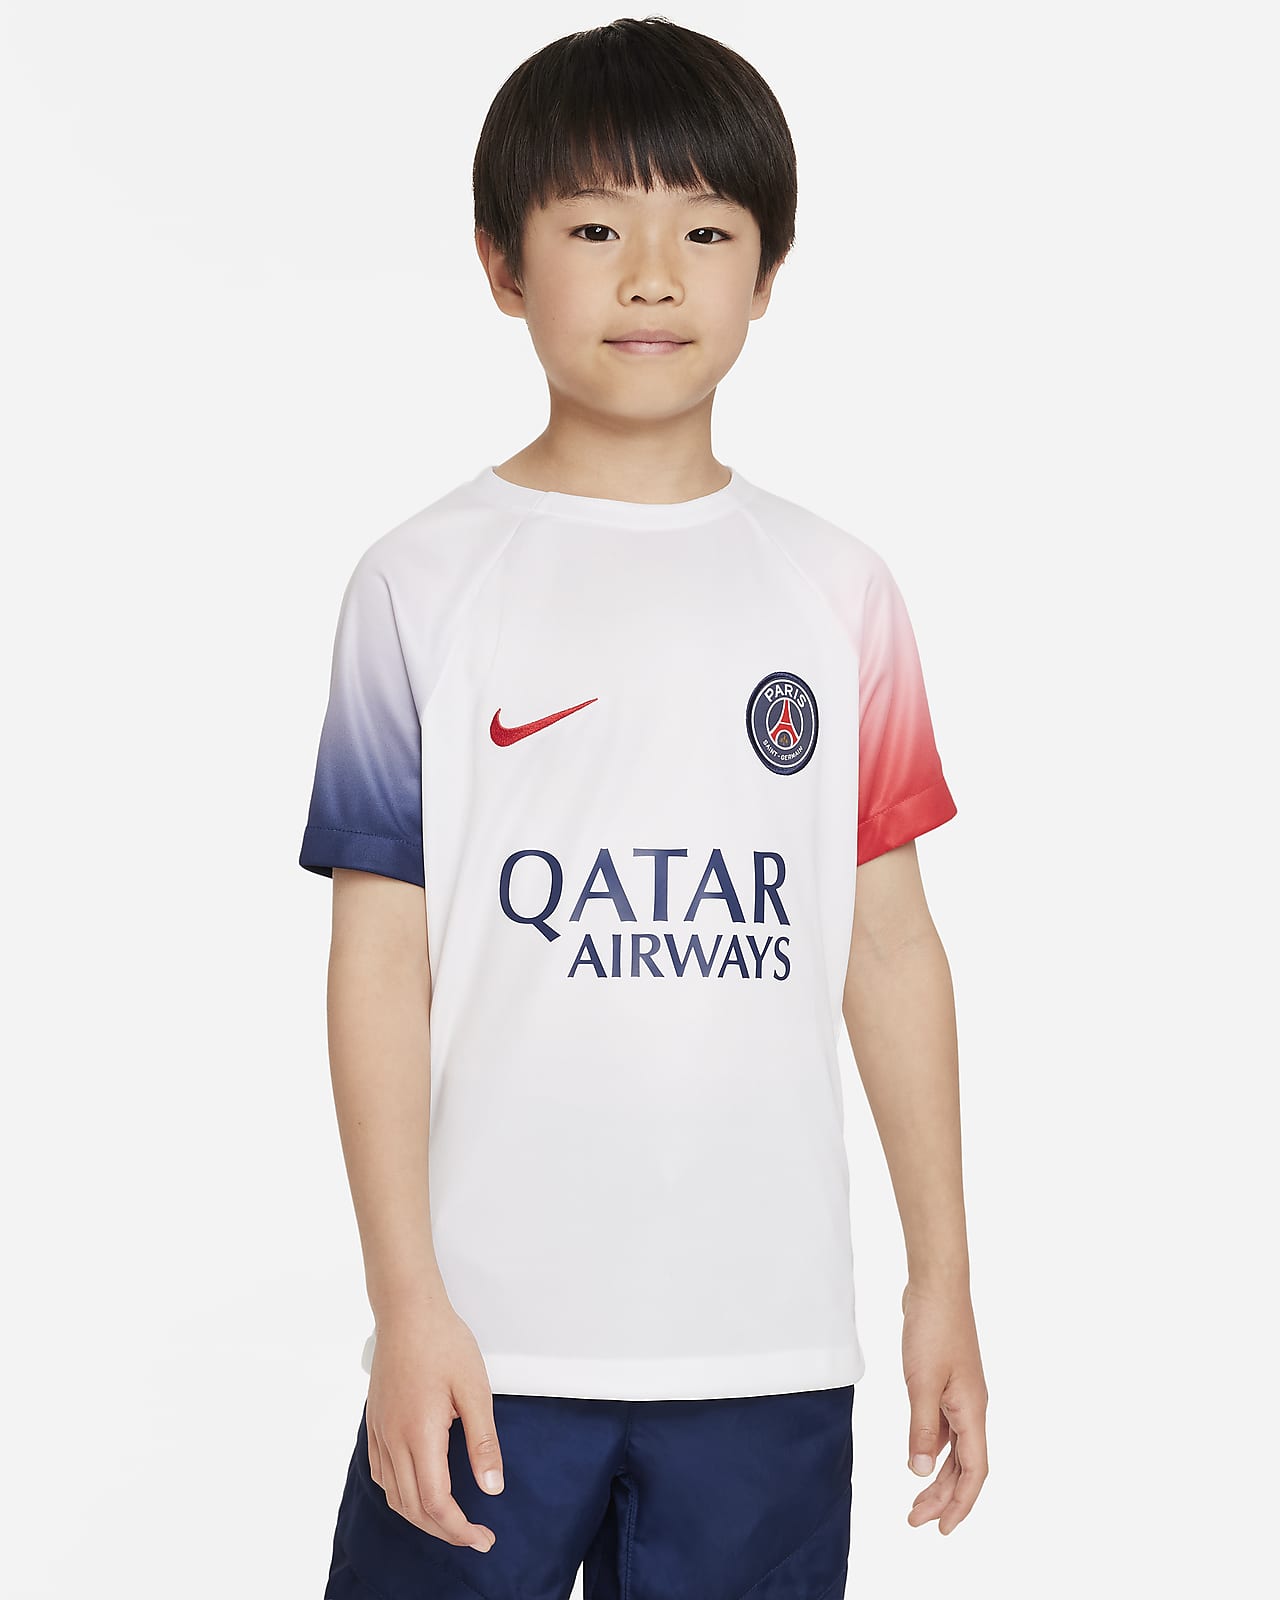 Paris Saint-Germain Academy Pro idegenbeli Nike Dri-FIT mérkőzés előtti futballfelső nagyobb gyerekeknek